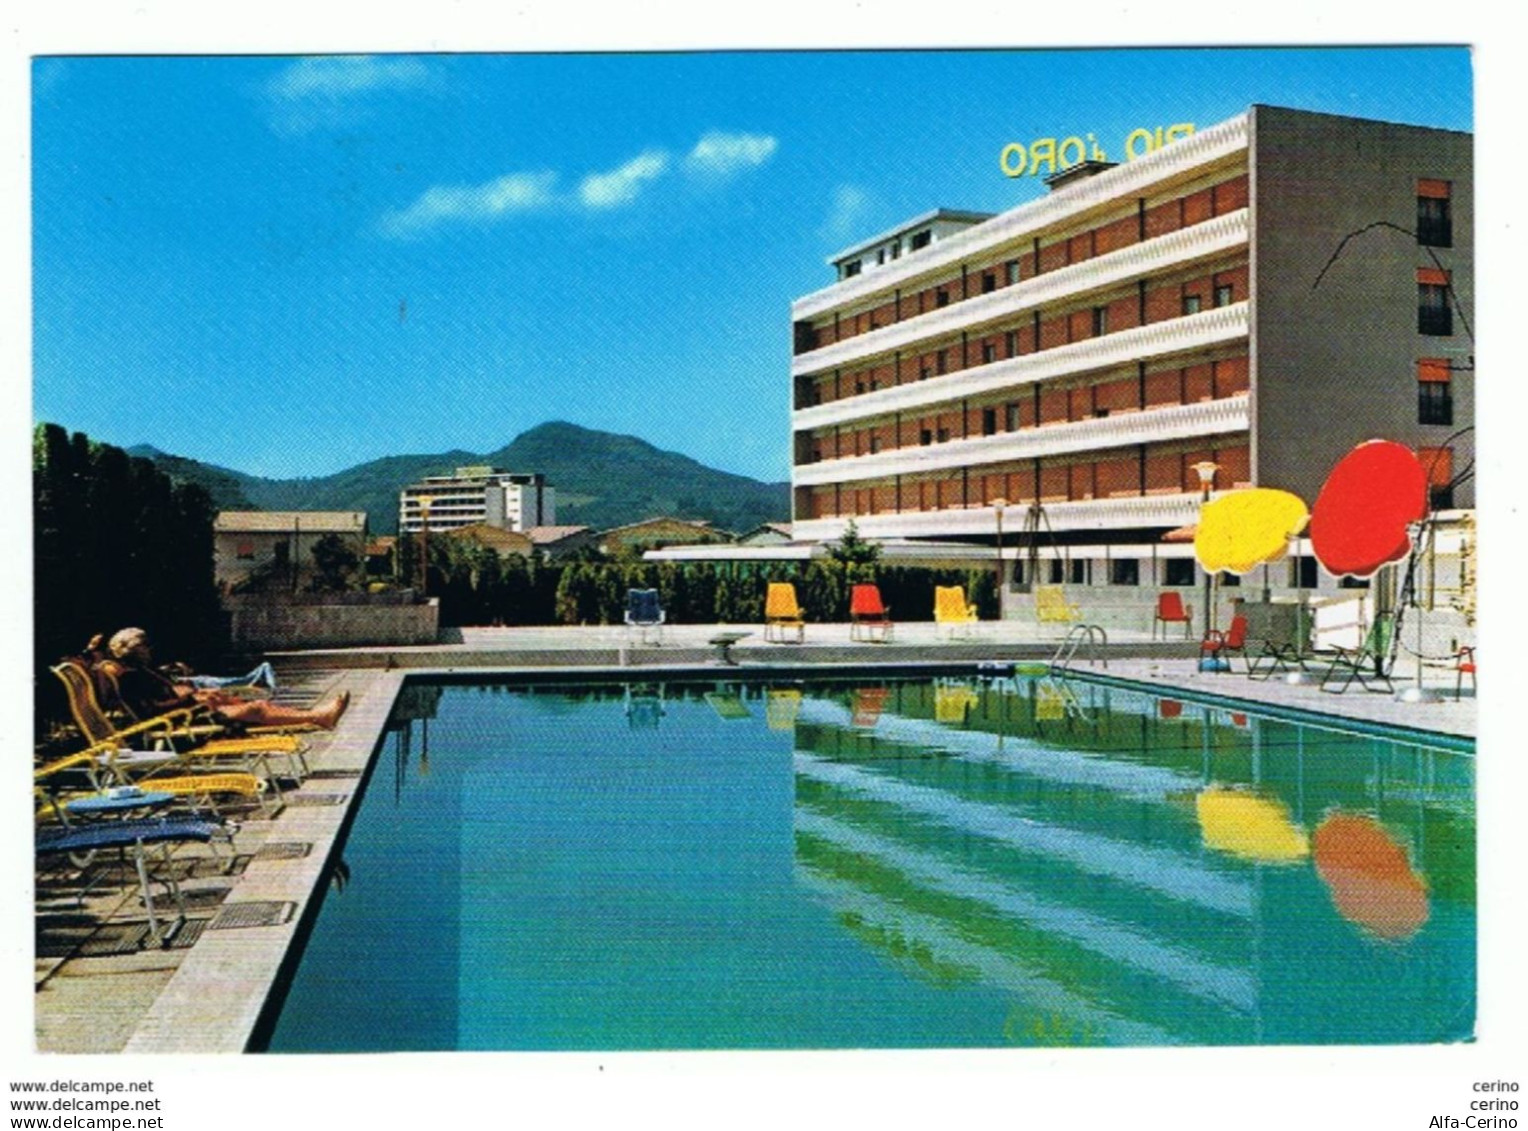 MONTEGROTTO  TERME (PD):   HOTEL  RIO  D' ORO  TERME  -  PER  LA  SVIZZERA  -  FG - Hotels & Restaurants